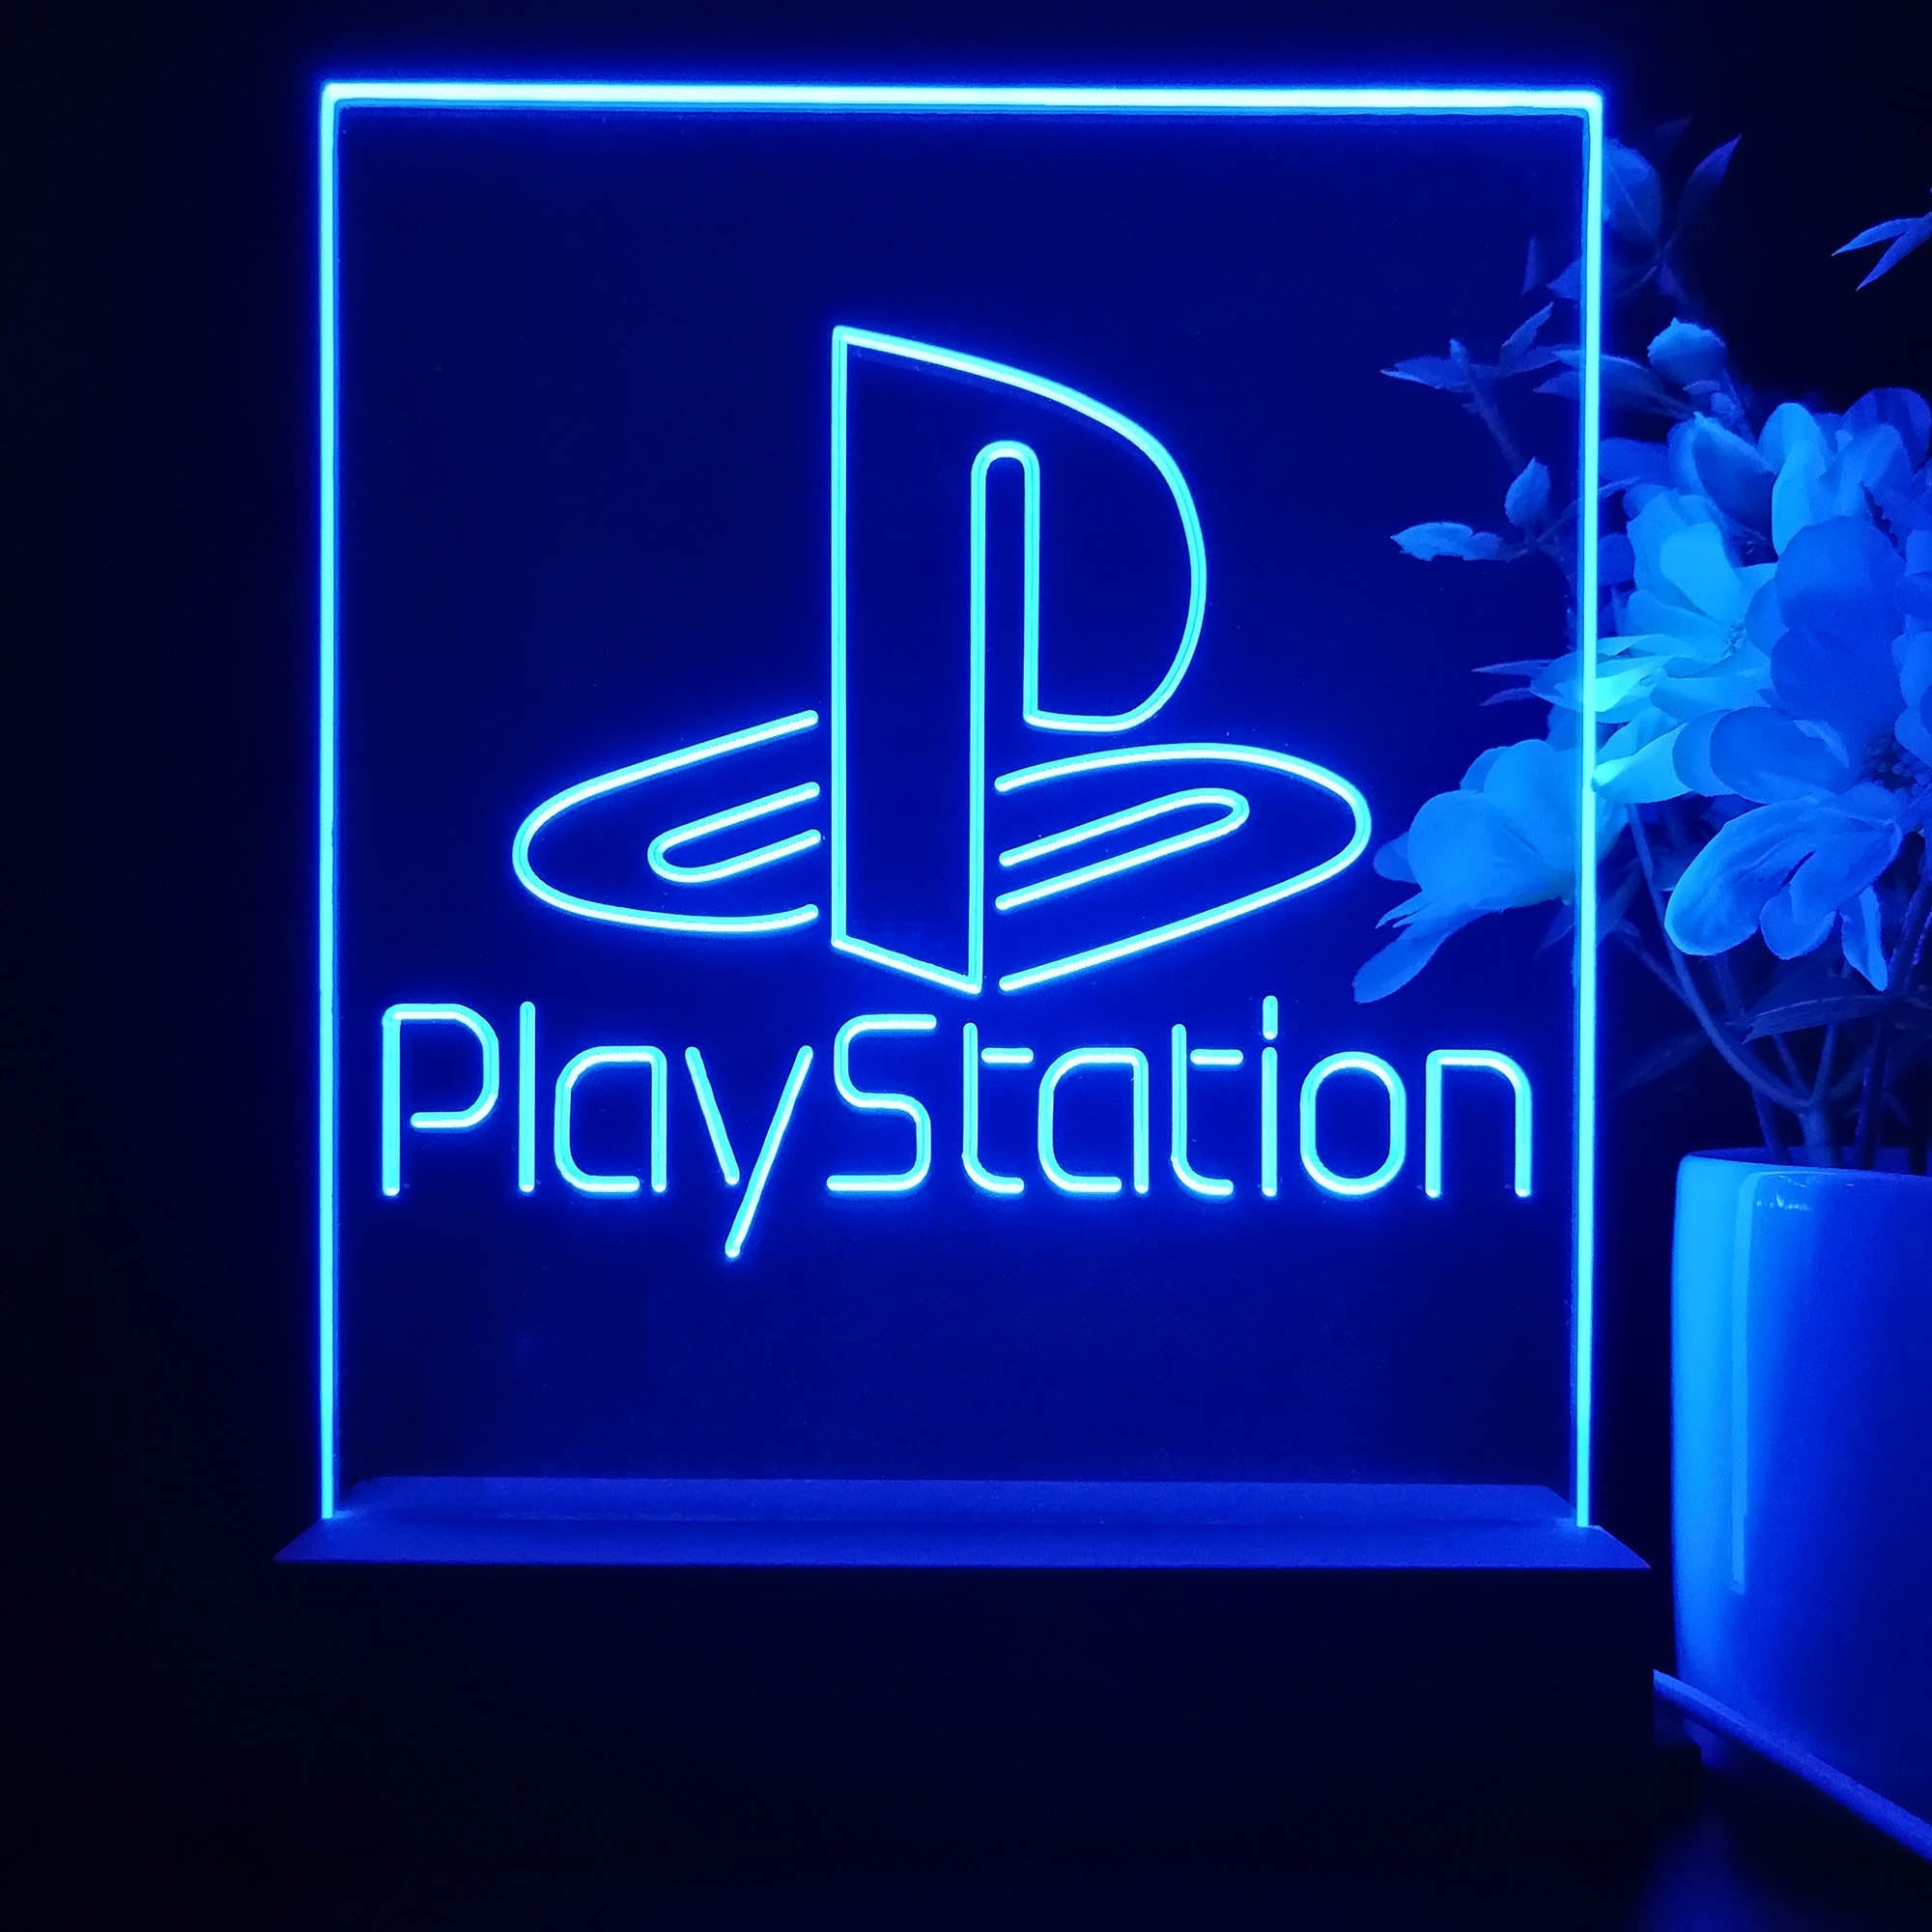 Playstation Gamer Tag Sign Lamp Display PRO LED SIGN